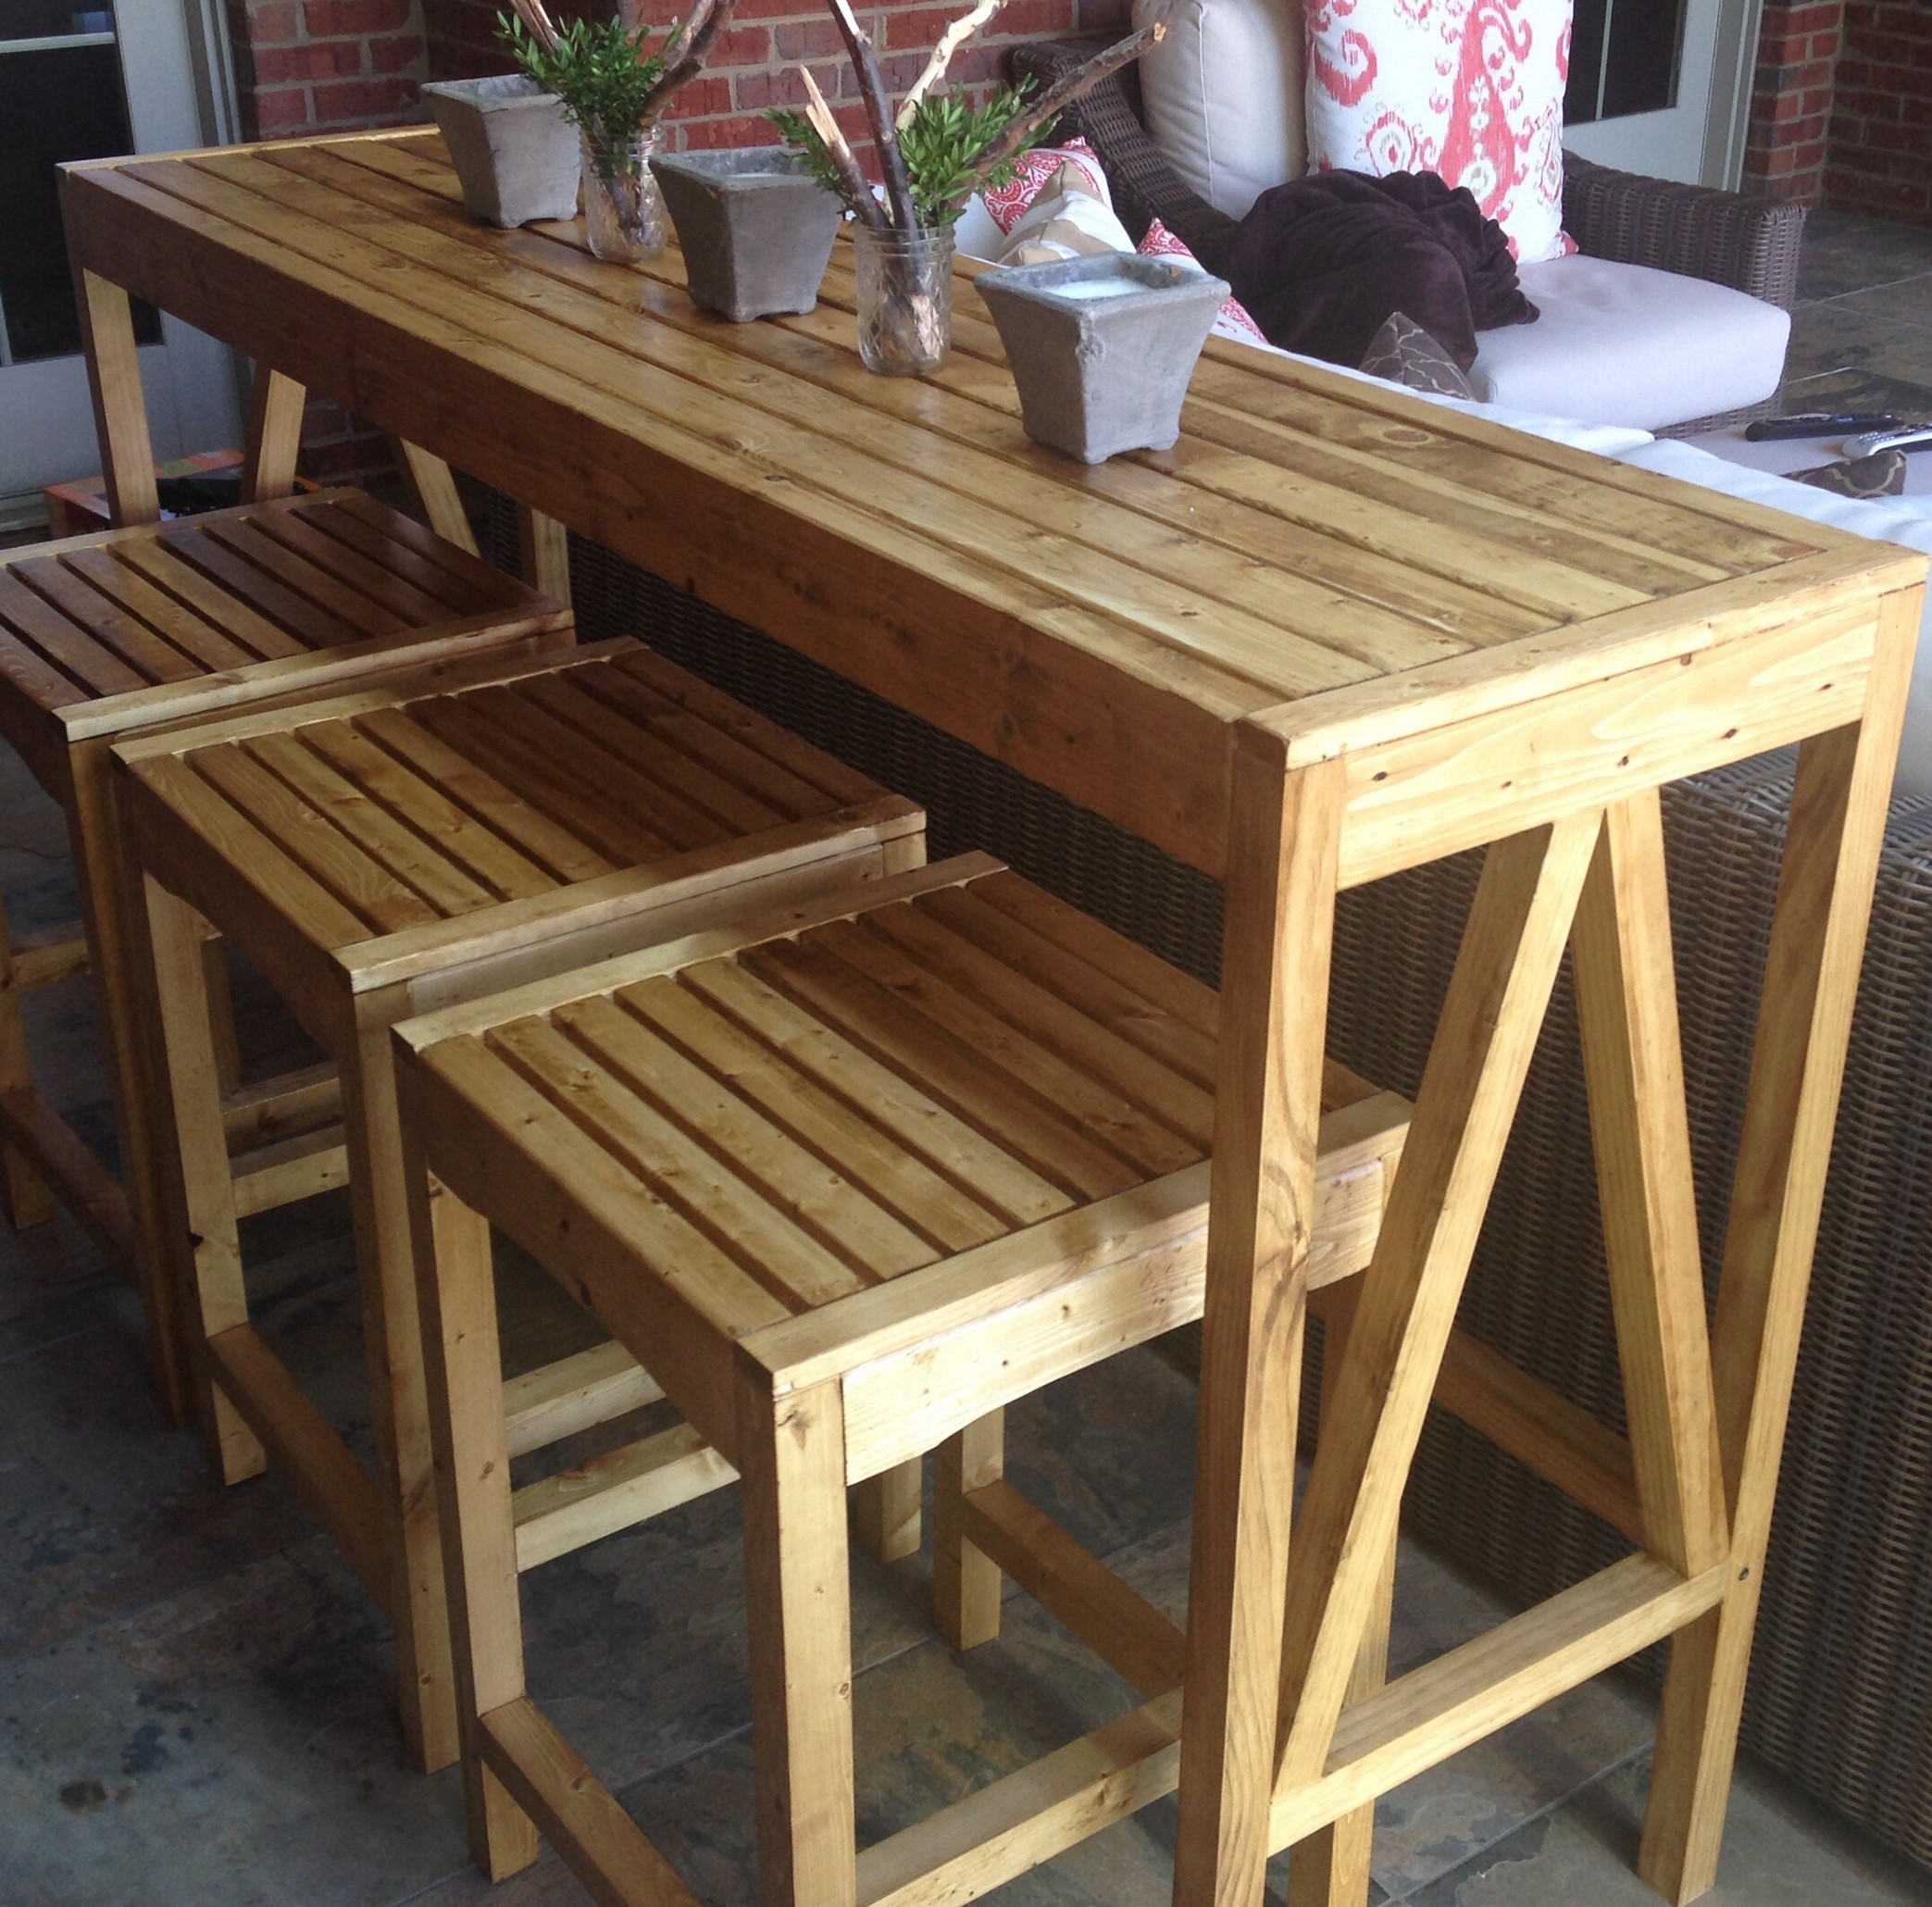 Outdoor bar table design